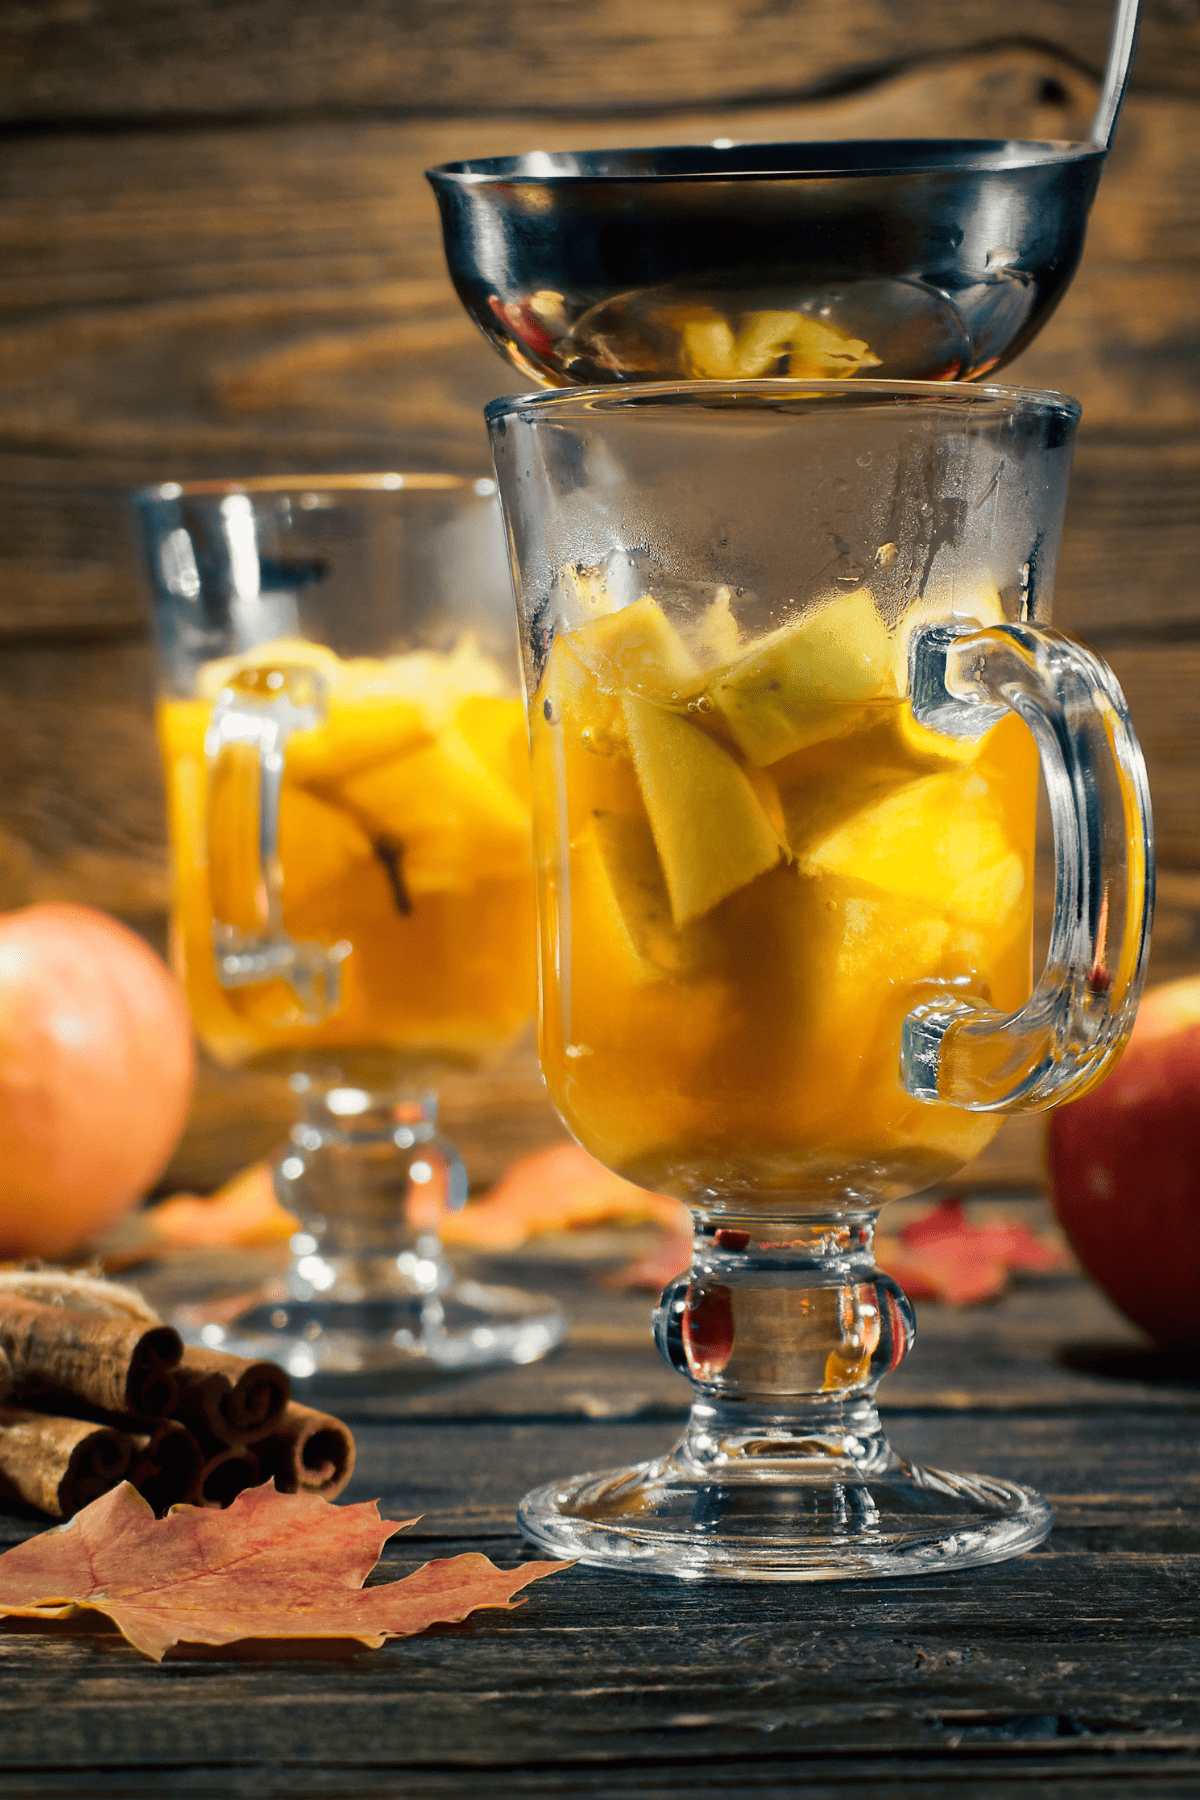 caramel apple icer ladled in a glasses.